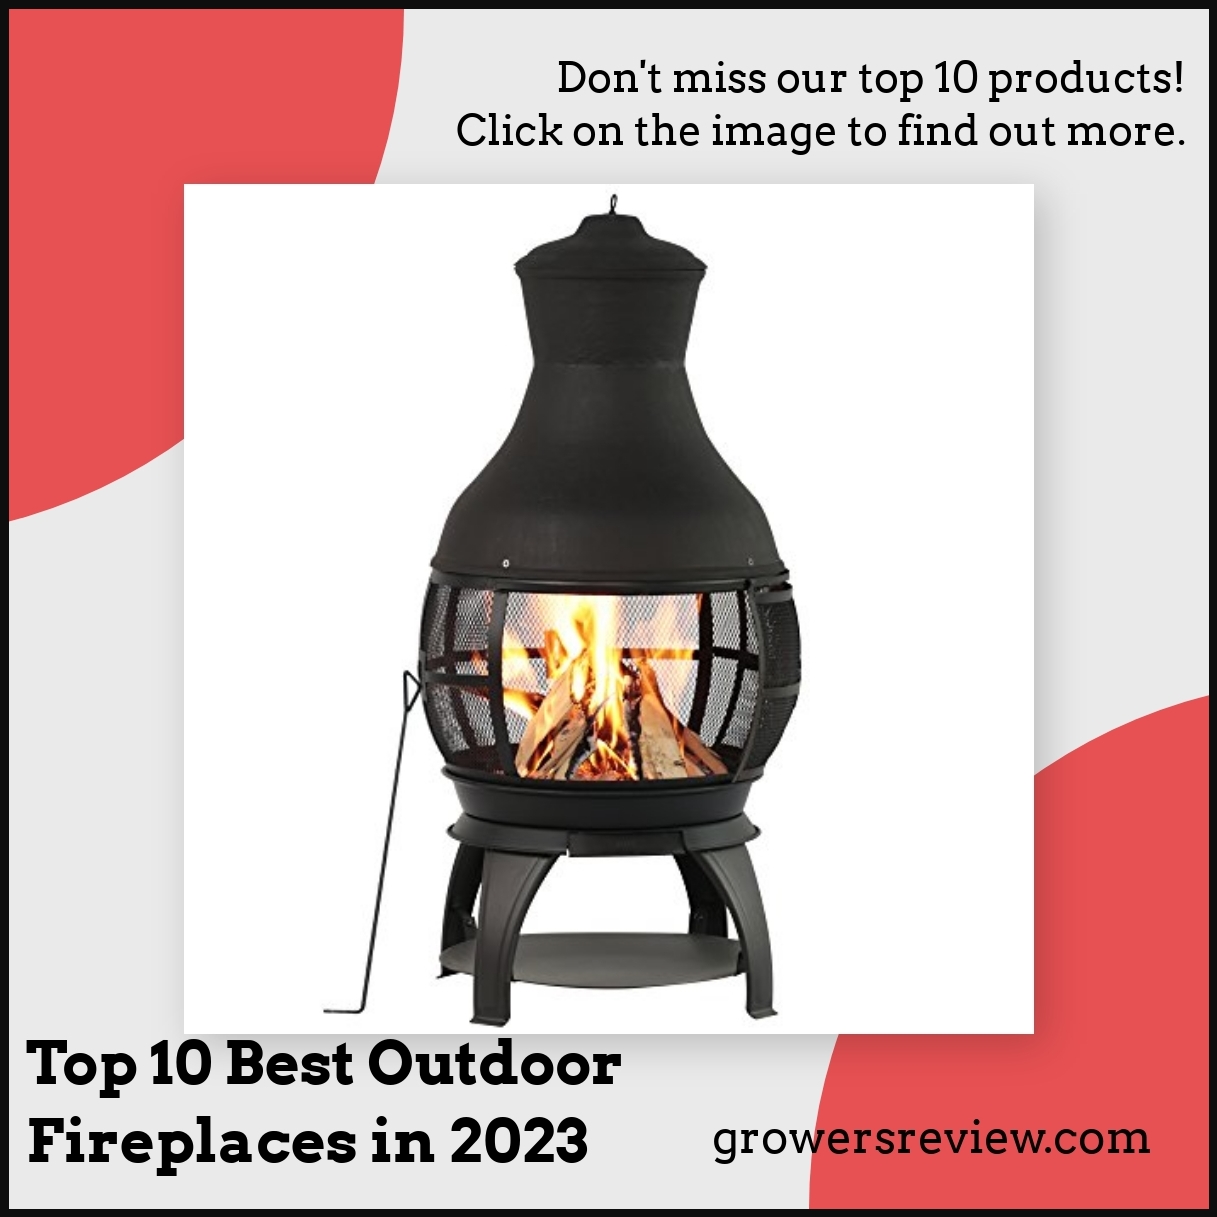 Top 10 Best Outdoor Fireplaces in 2023